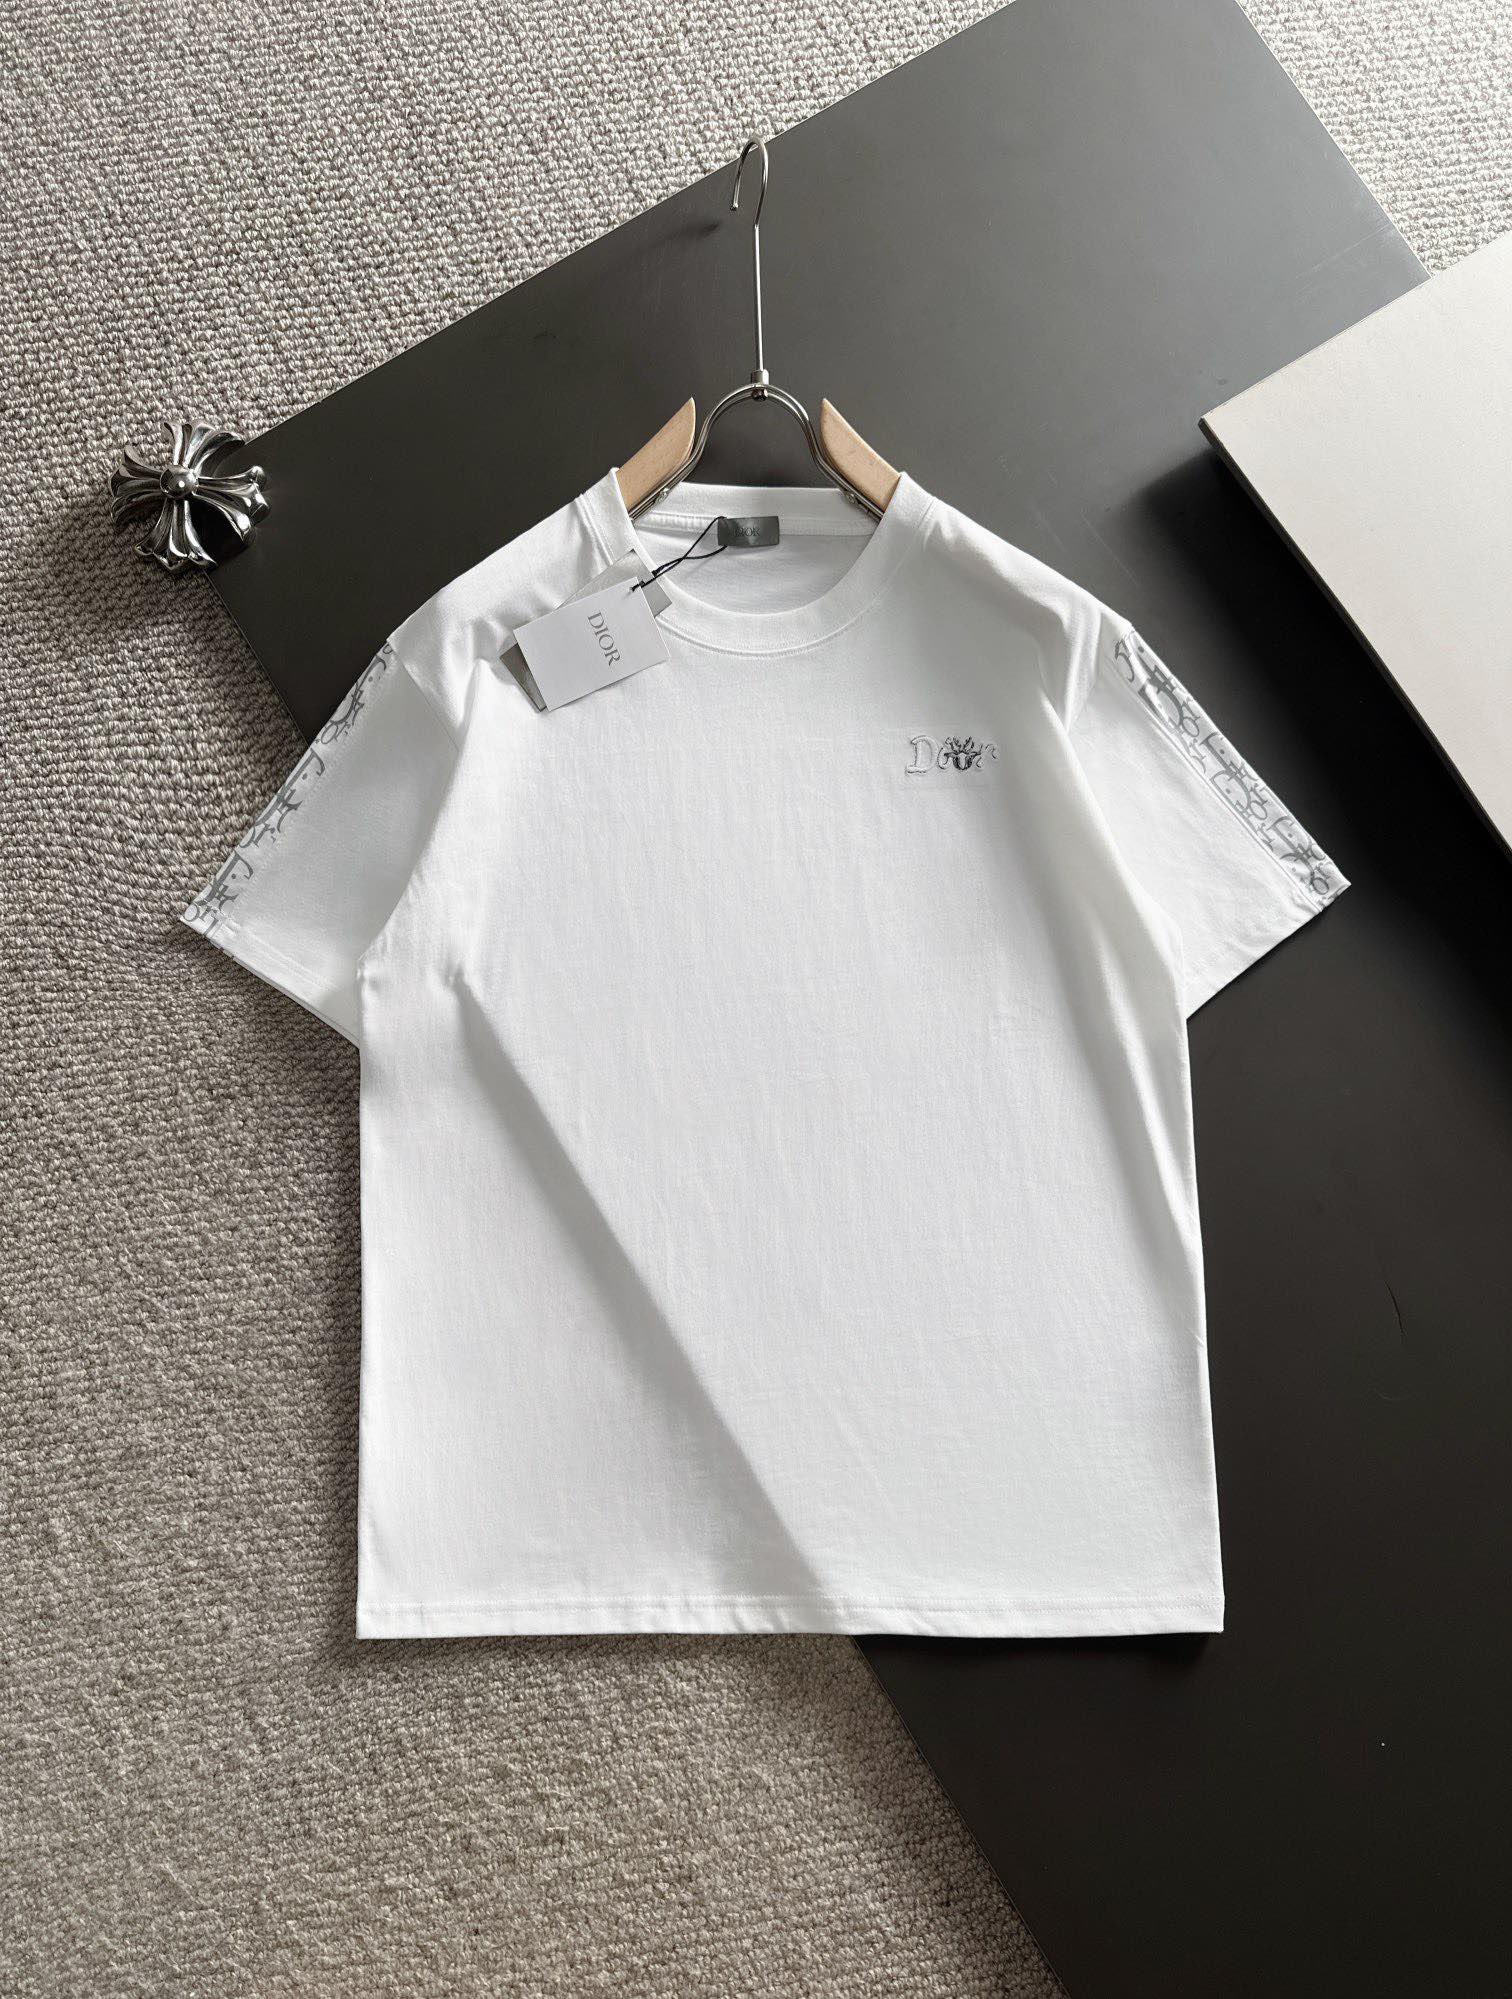 驚きの破格値2023 新着 dior 半袖 tシャツスーパーコピー 個性的  プリント_1